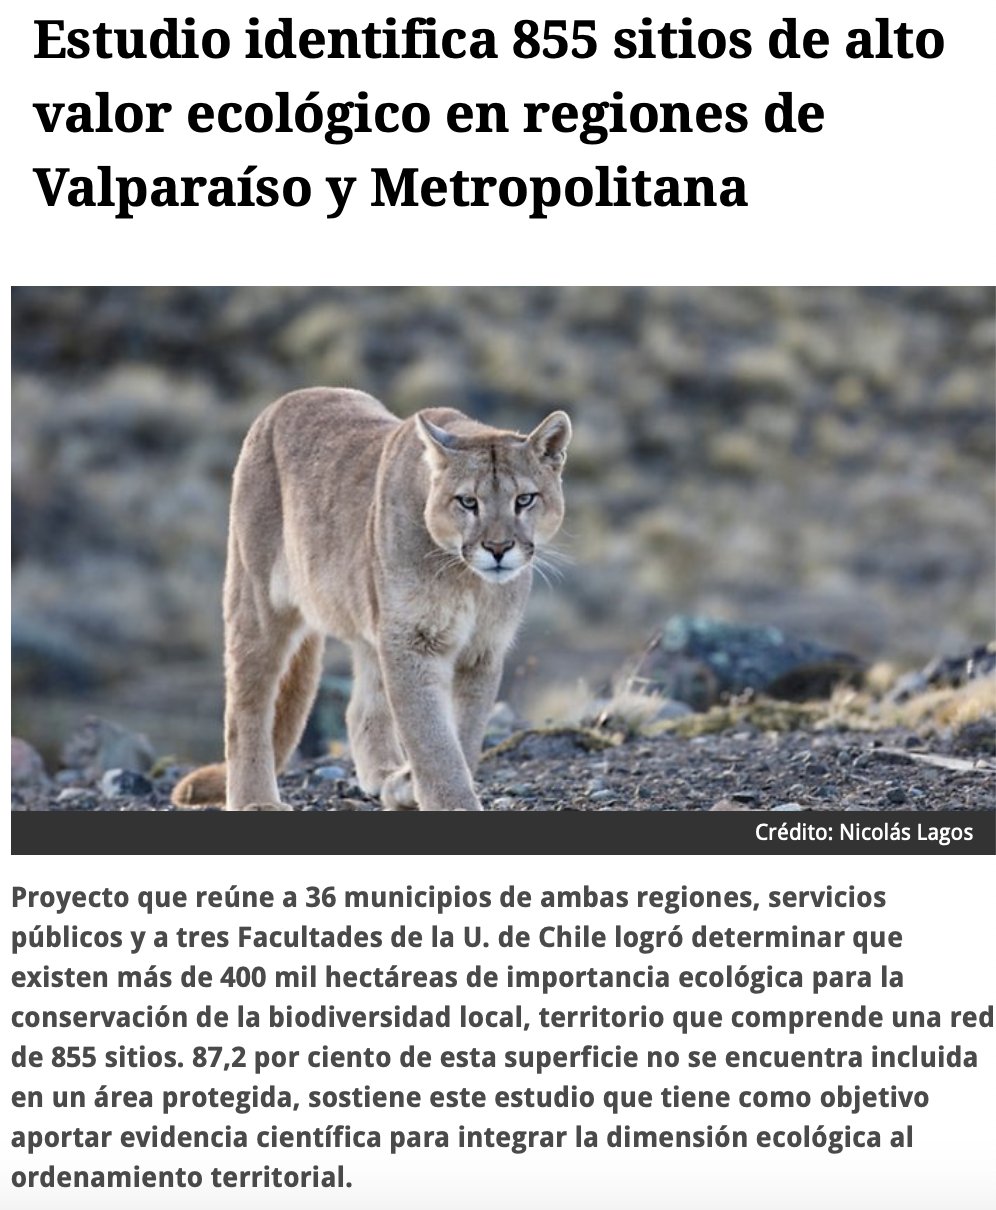 Estudio identifica 855 sitios de alto valor ecológico en regiones de Valparaíso y Metropolitana